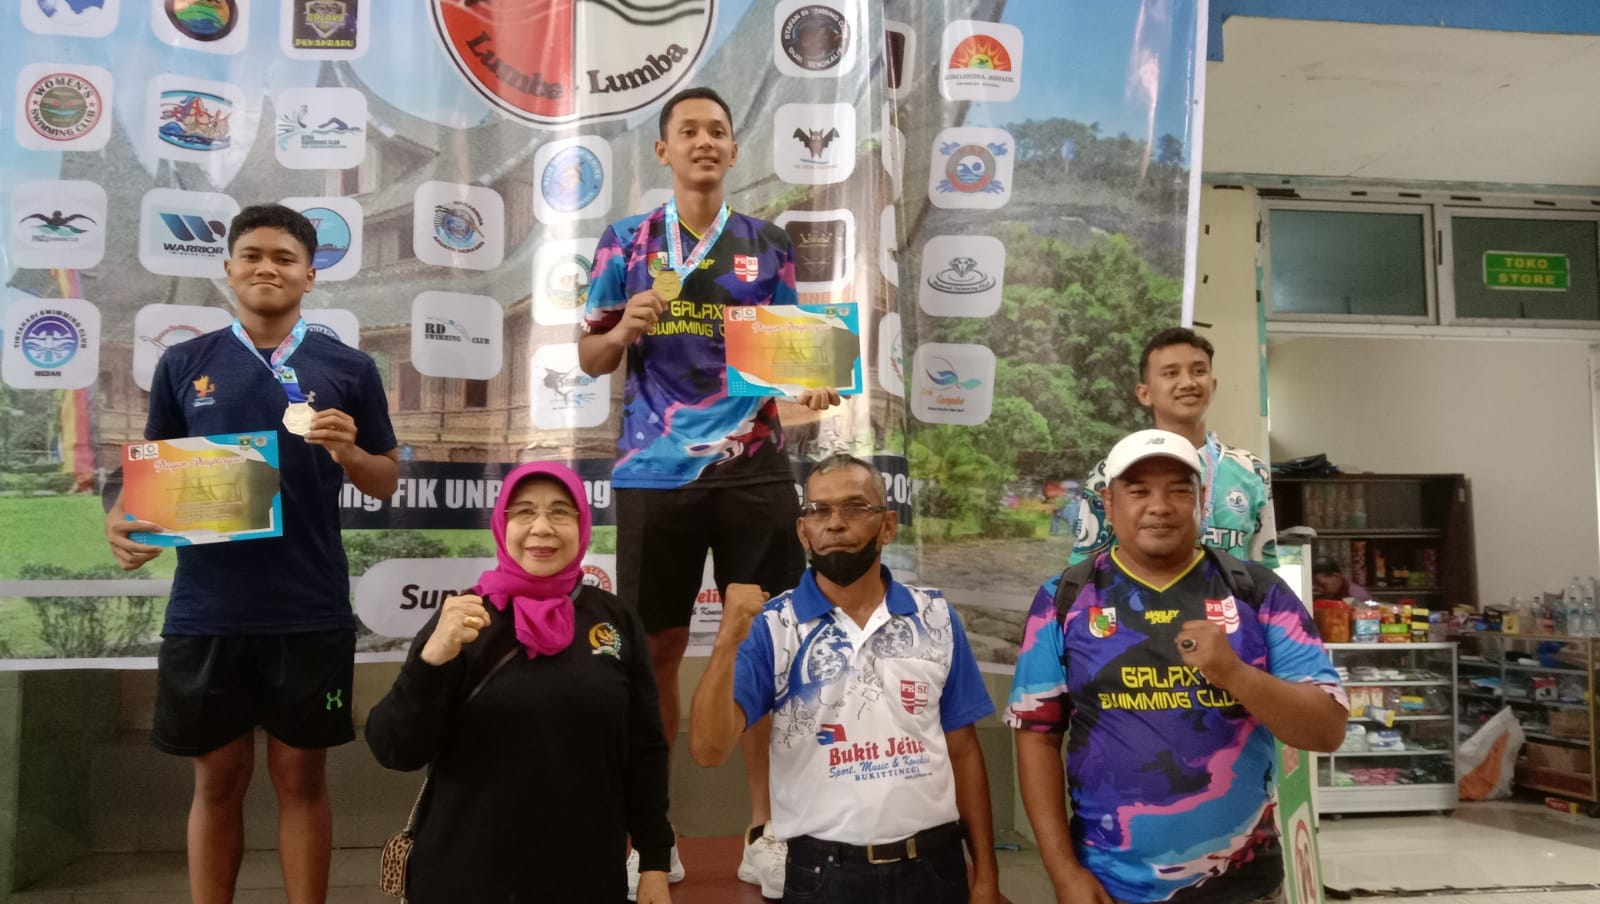 Anggota DPD RI, Emma Yohanna menyerahkan medali dan piagam penghargaan kepada peserta lomba renang se-Sumatera. (Foto: Dok. Radarsumbar.com)